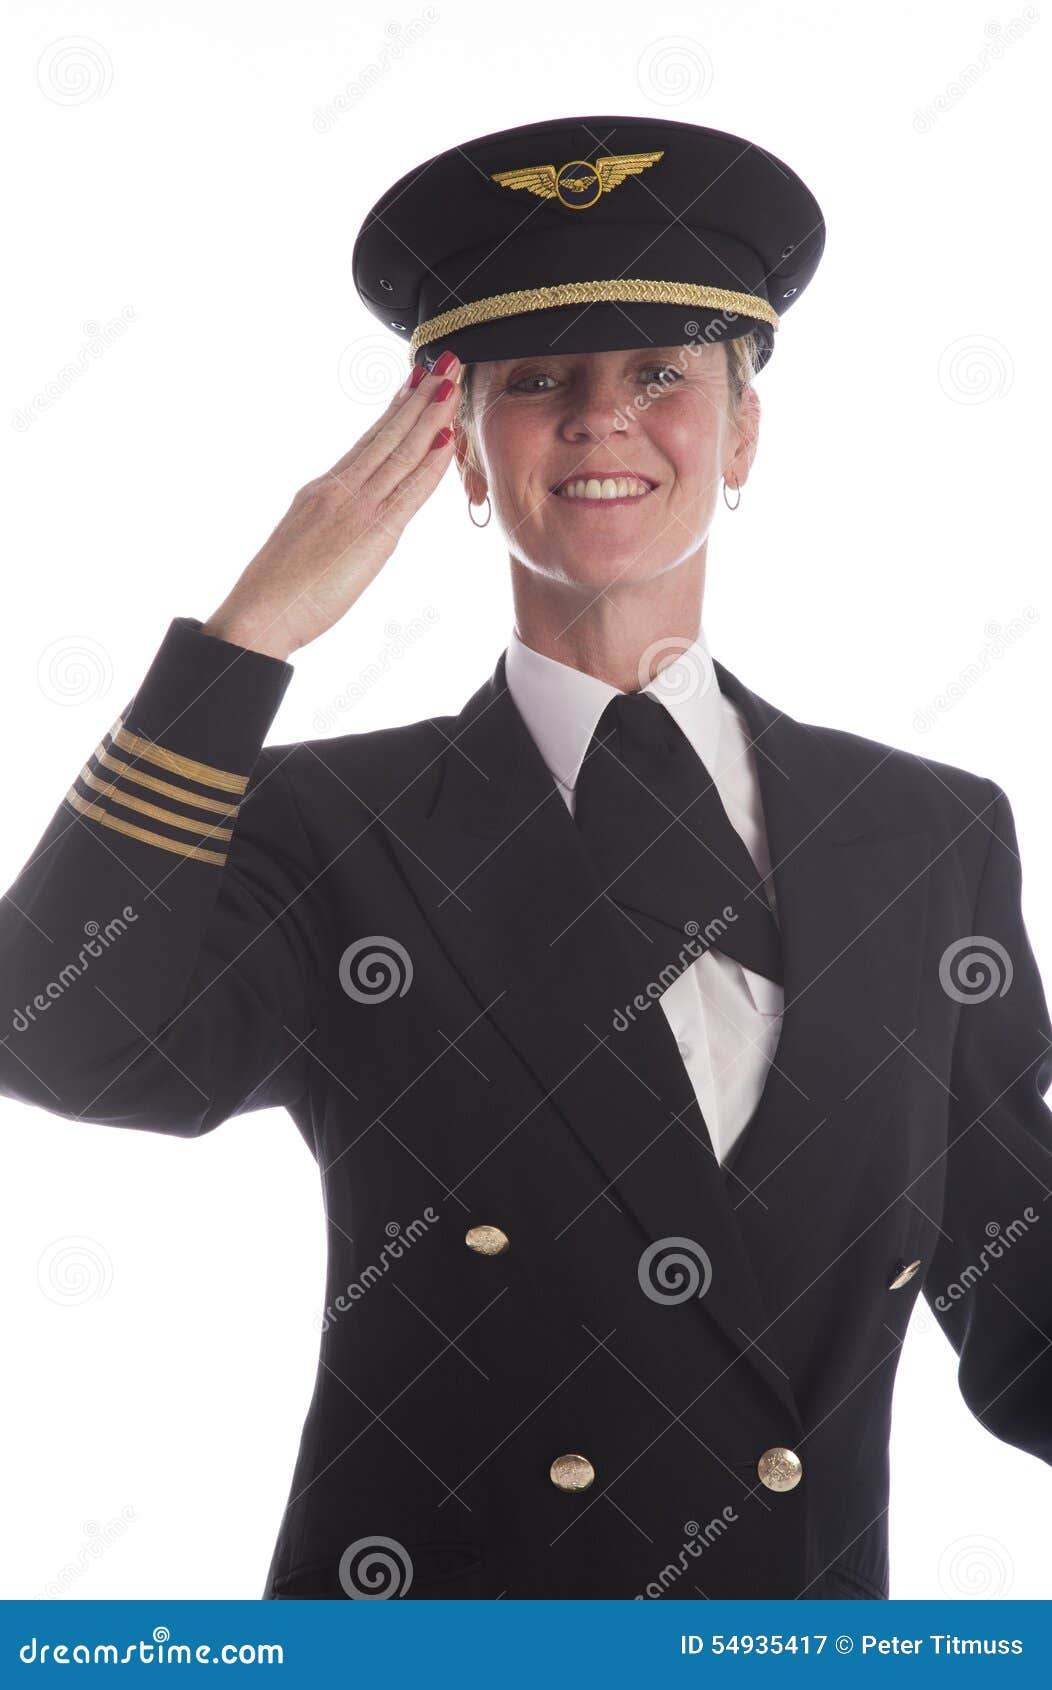 airline-pilot-wearing-uniform-hat-saluti